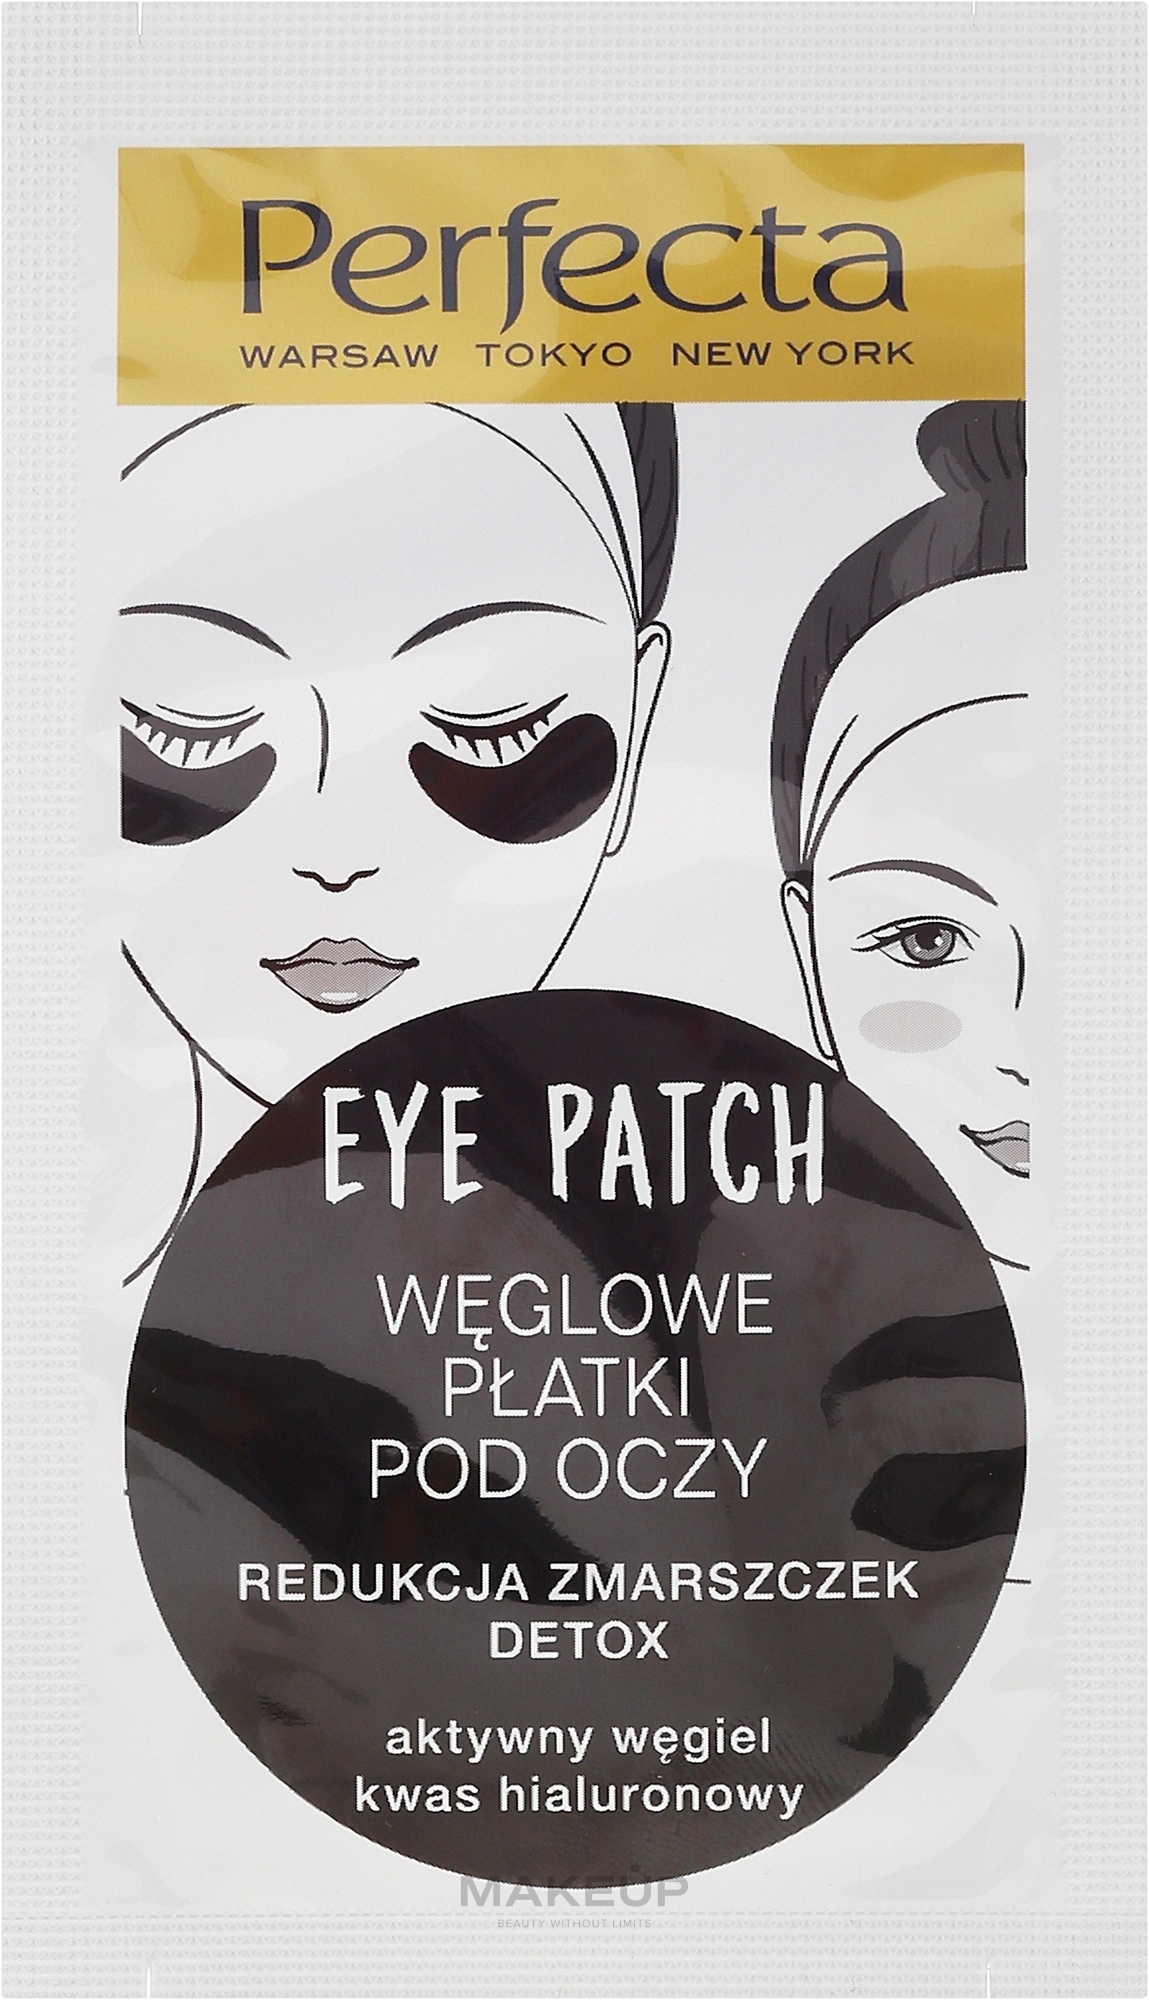 WYPRZEDAŻ Węglowe płatki pod oczy redukujące zmarszczki - Dax Cosmetics Perfecta Eye Patch * — Zdjęcie 2 szt.